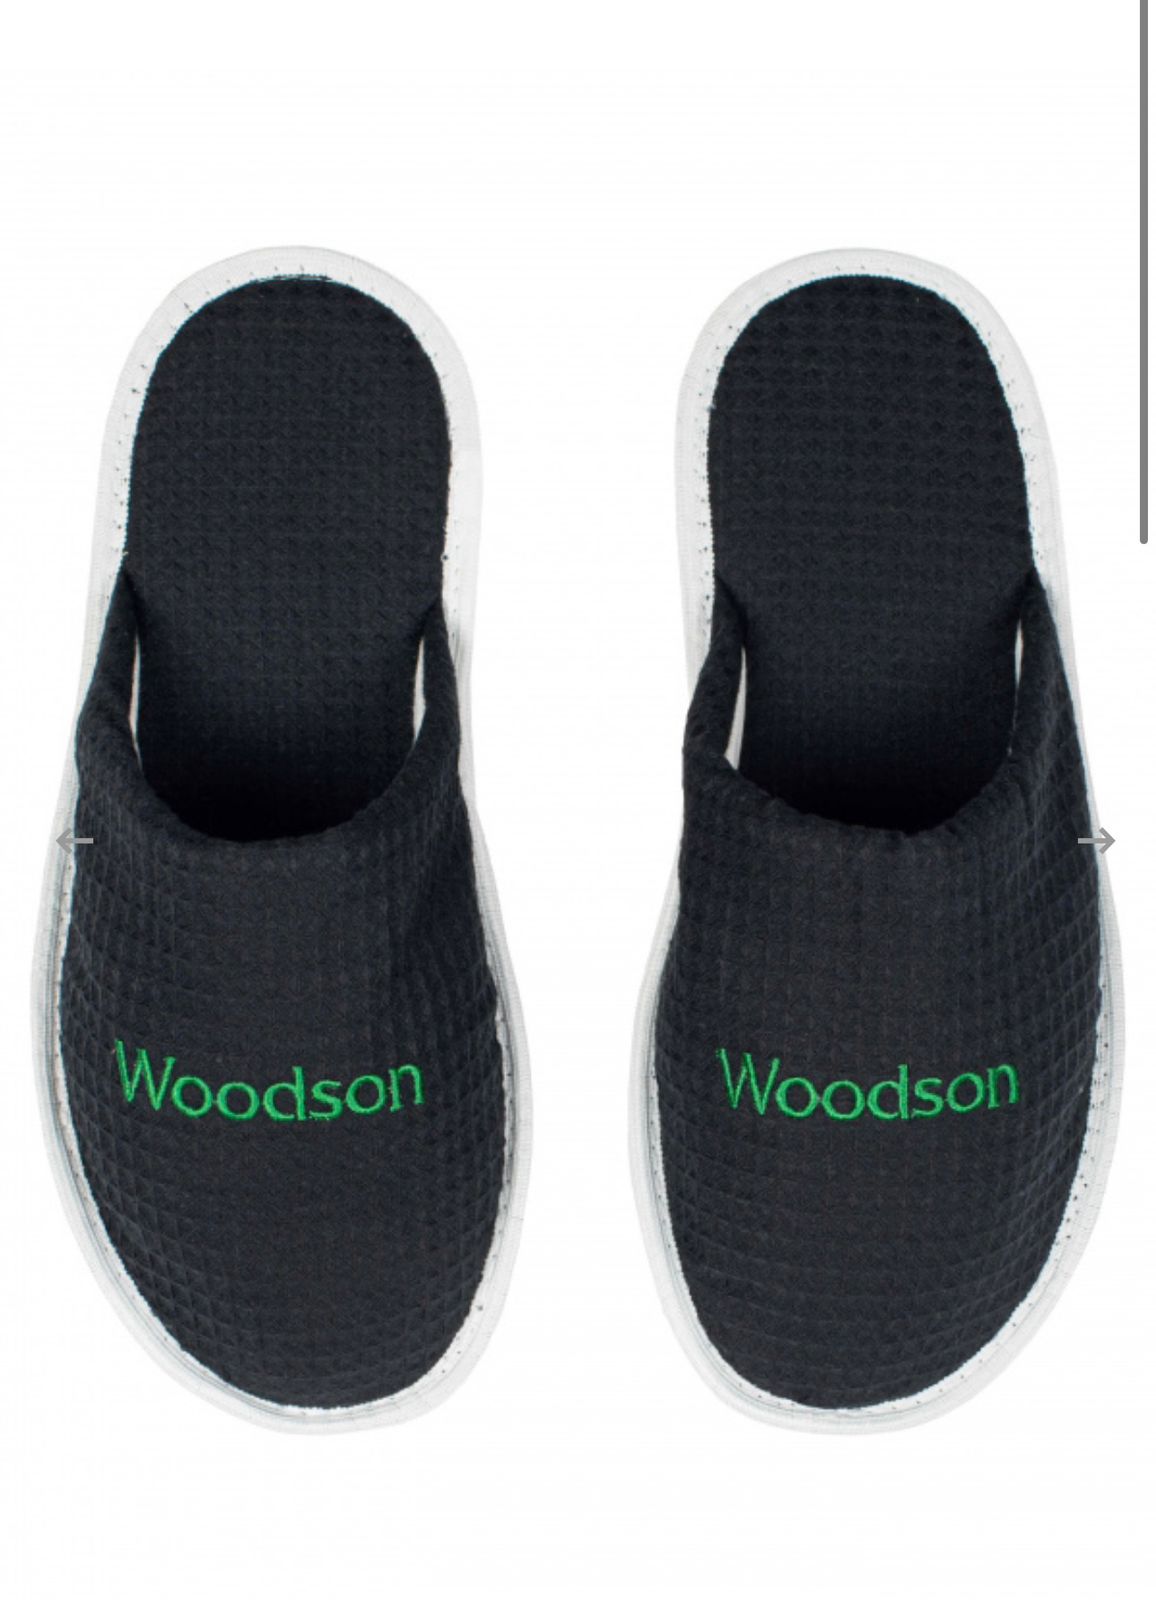 Тапочки Woodson, вафельные с закрытым мысом (43- 46), черный цвет